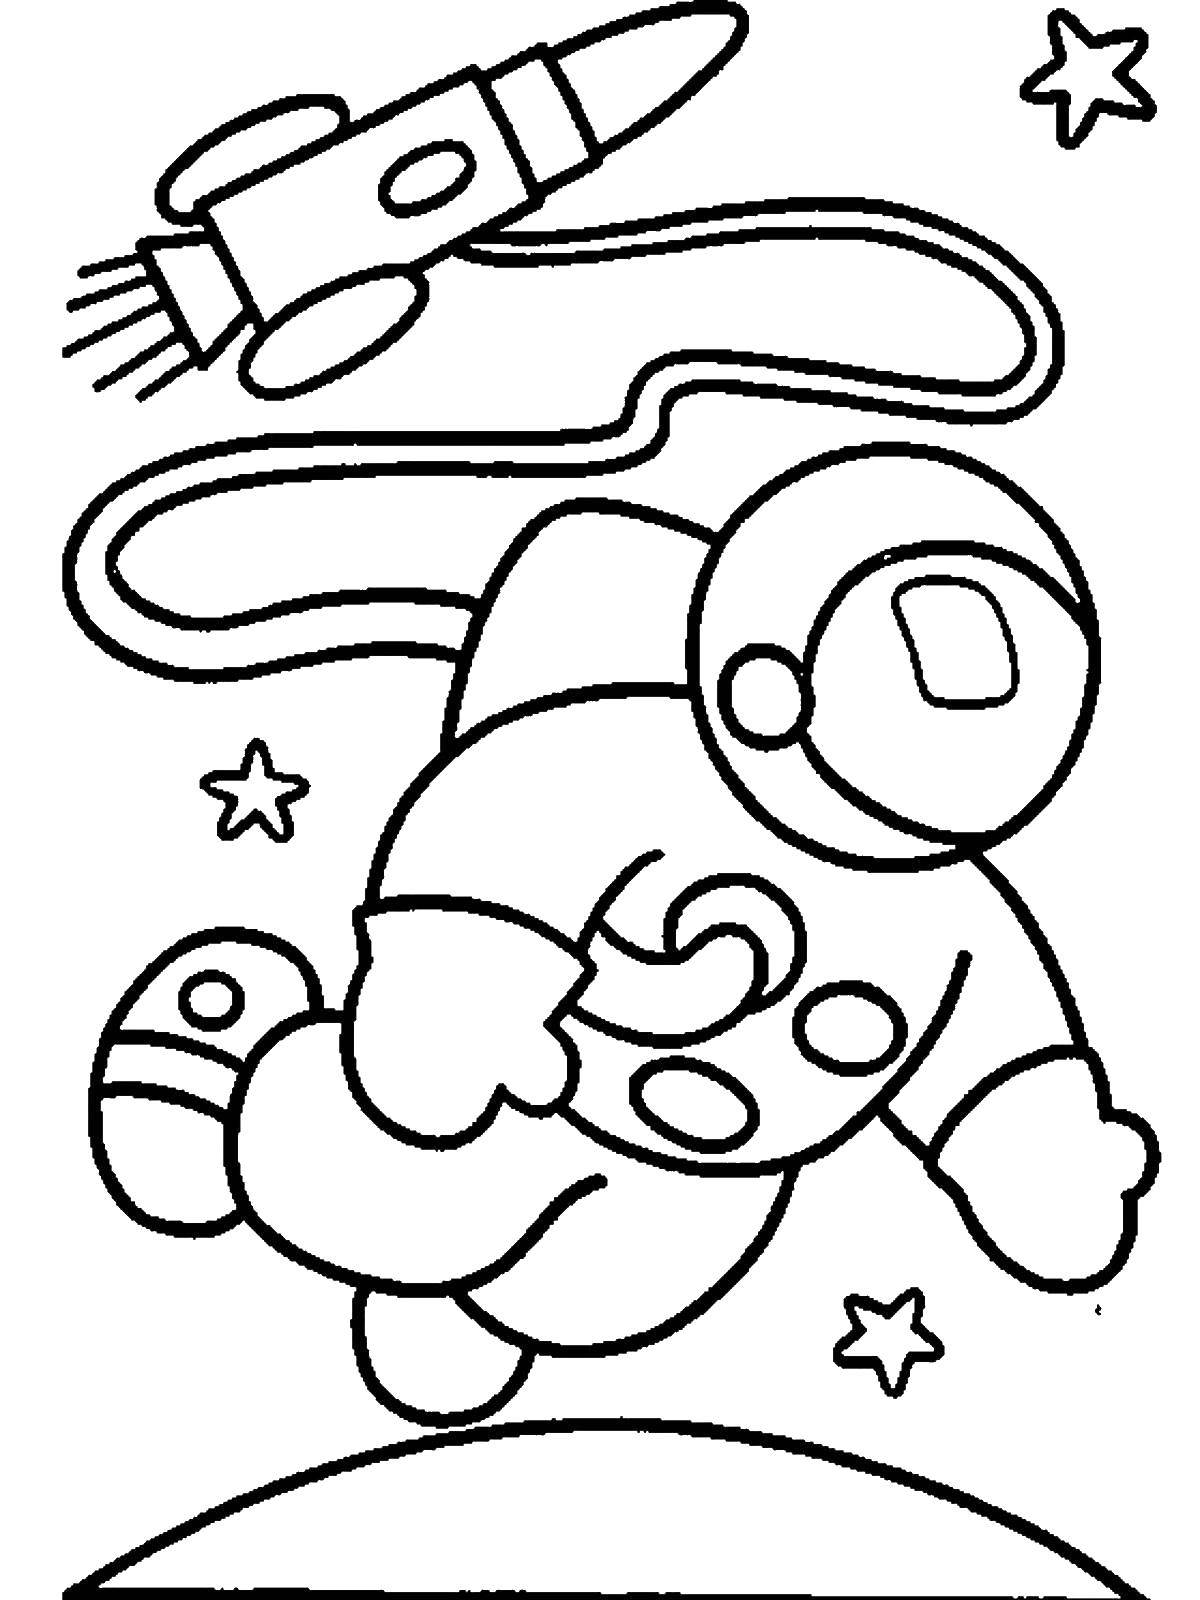 Картинки ко дню космонавтики для детей. Космос раскраска для детей. Раскраска. В космосе. Космонавт раскраска для детей. Раскраска на тему космос для детей.